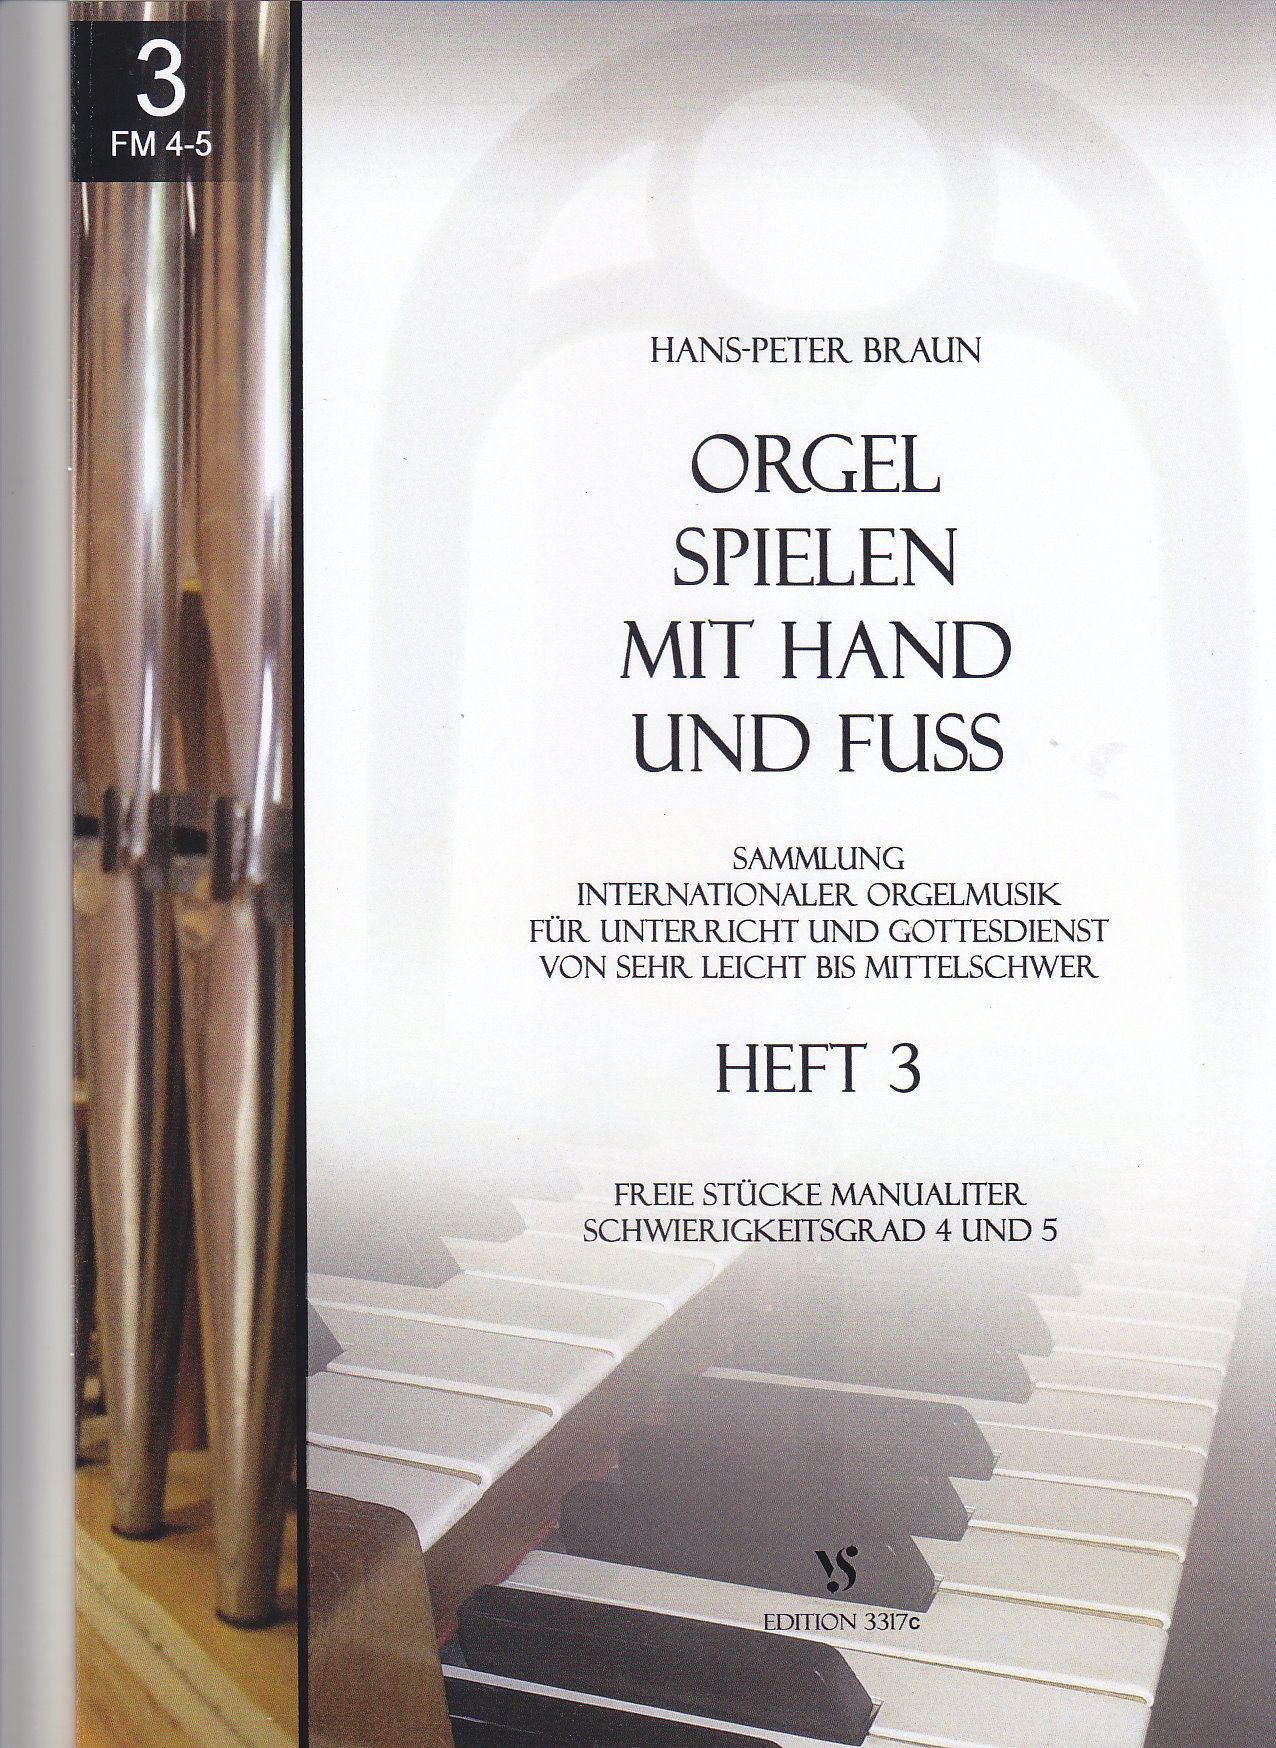 Noten Orgel spielen mit Hand und Fuss 3 Strube 3317c Hans Peter Braun manualiter  - Onlineshop Musikhaus Markstein